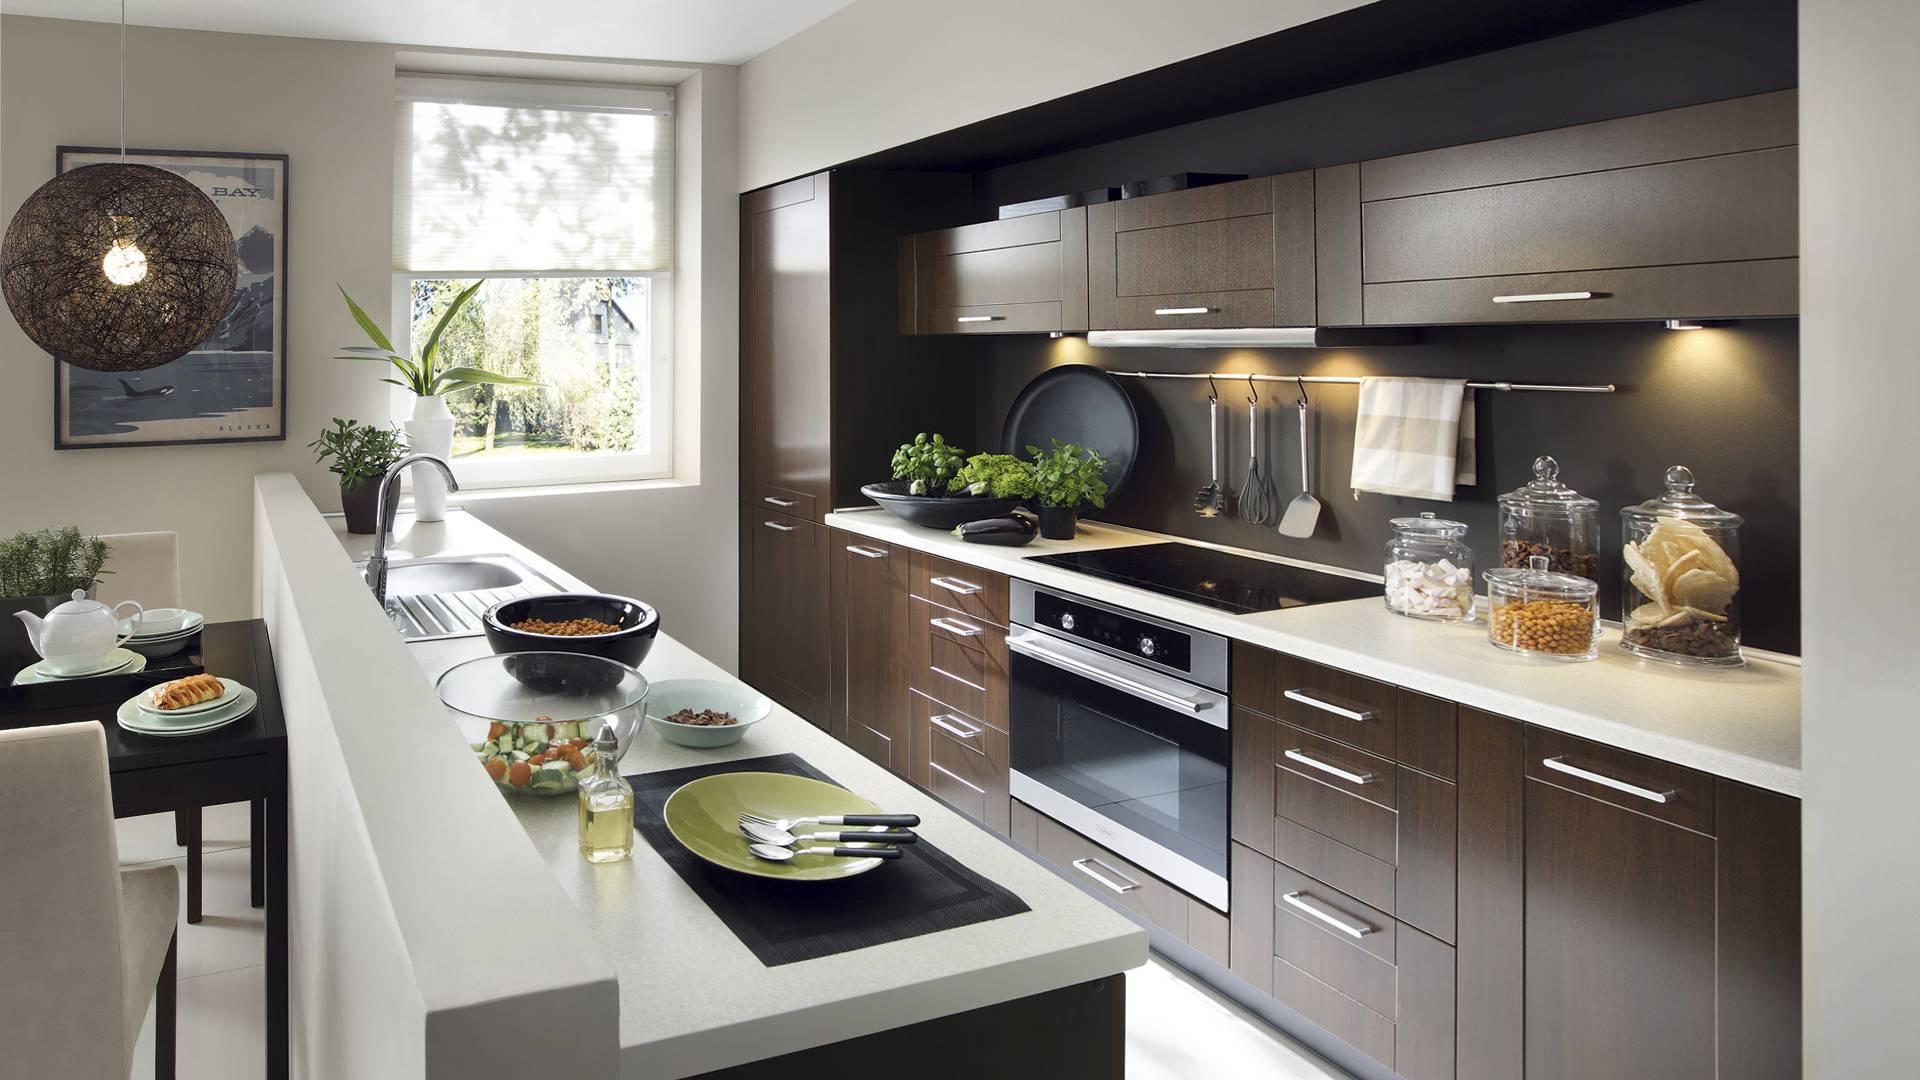 Мебель для кухни: 110 фото новинок и актуальных идей дизайна кухонной мебели